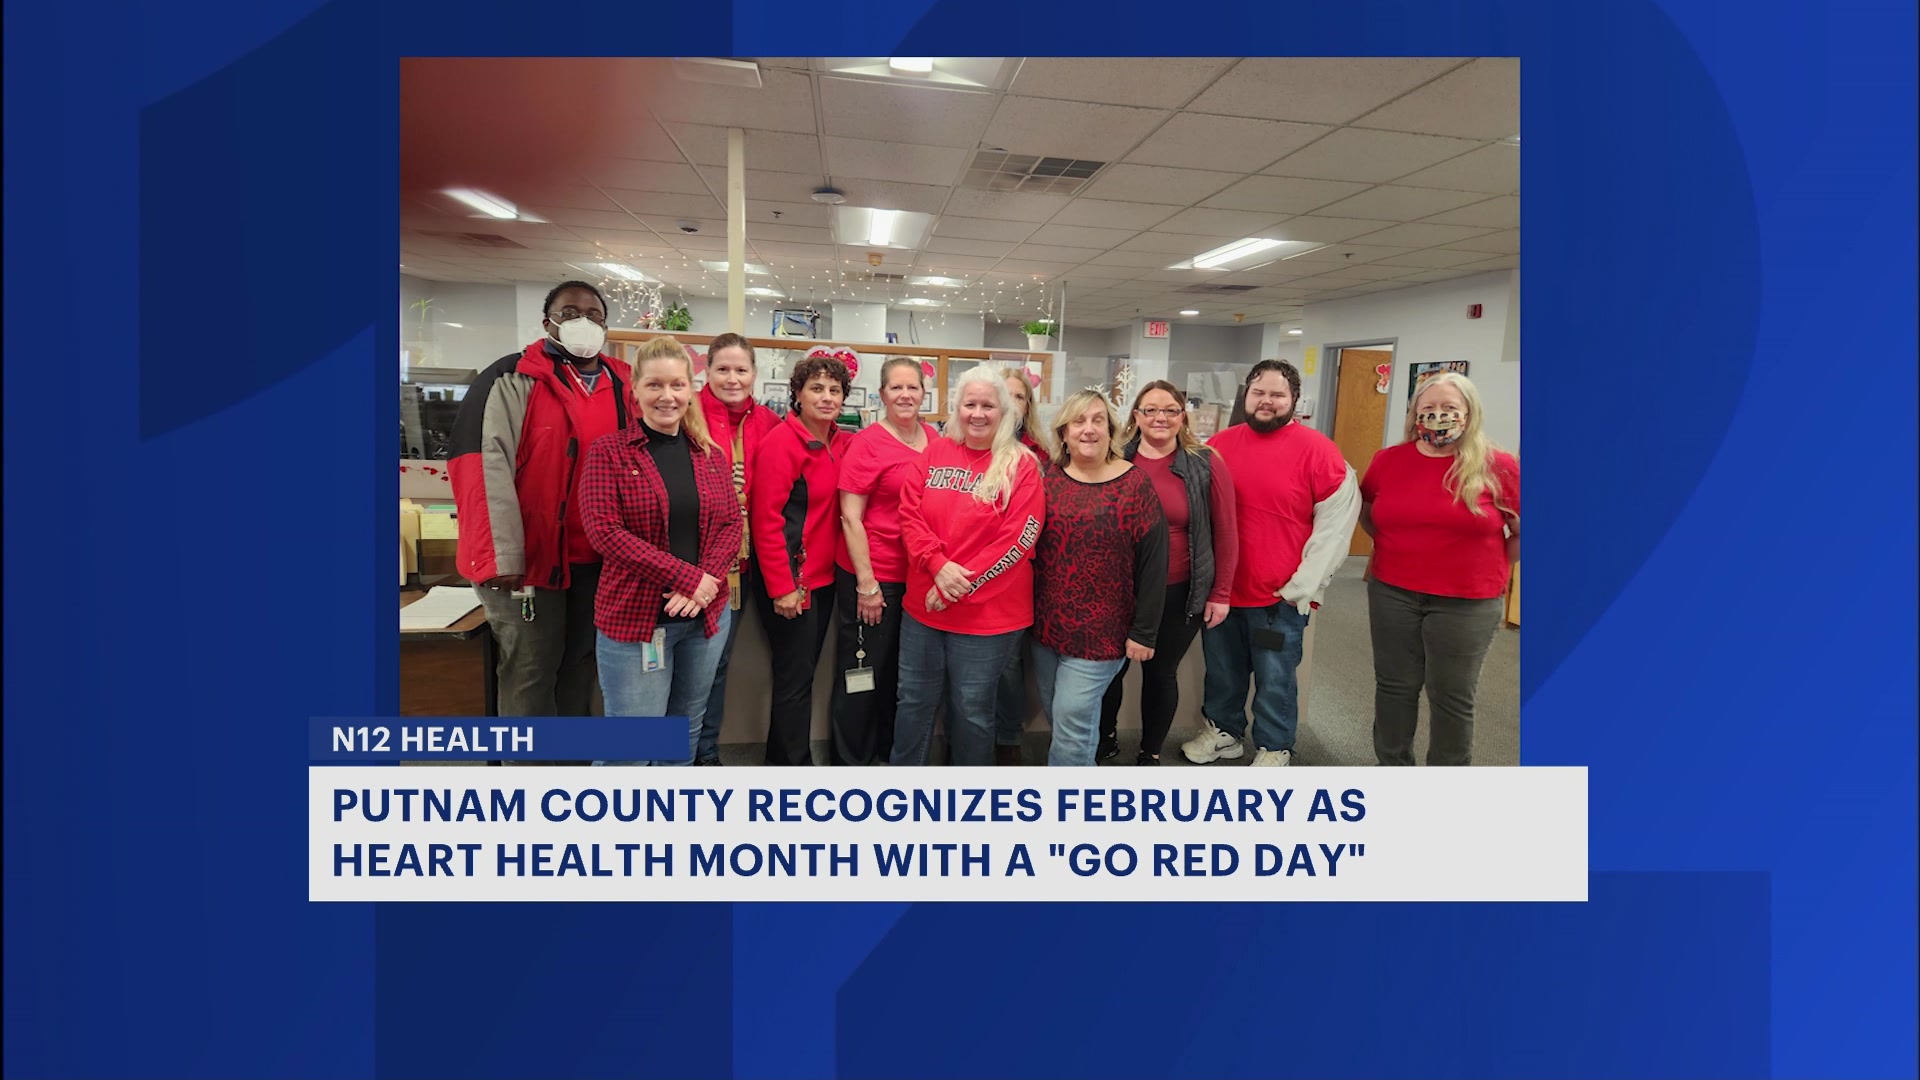 Окръг Putnam празнува „Go Red Day“, за да повиши осведомеността за здравето на сърцето